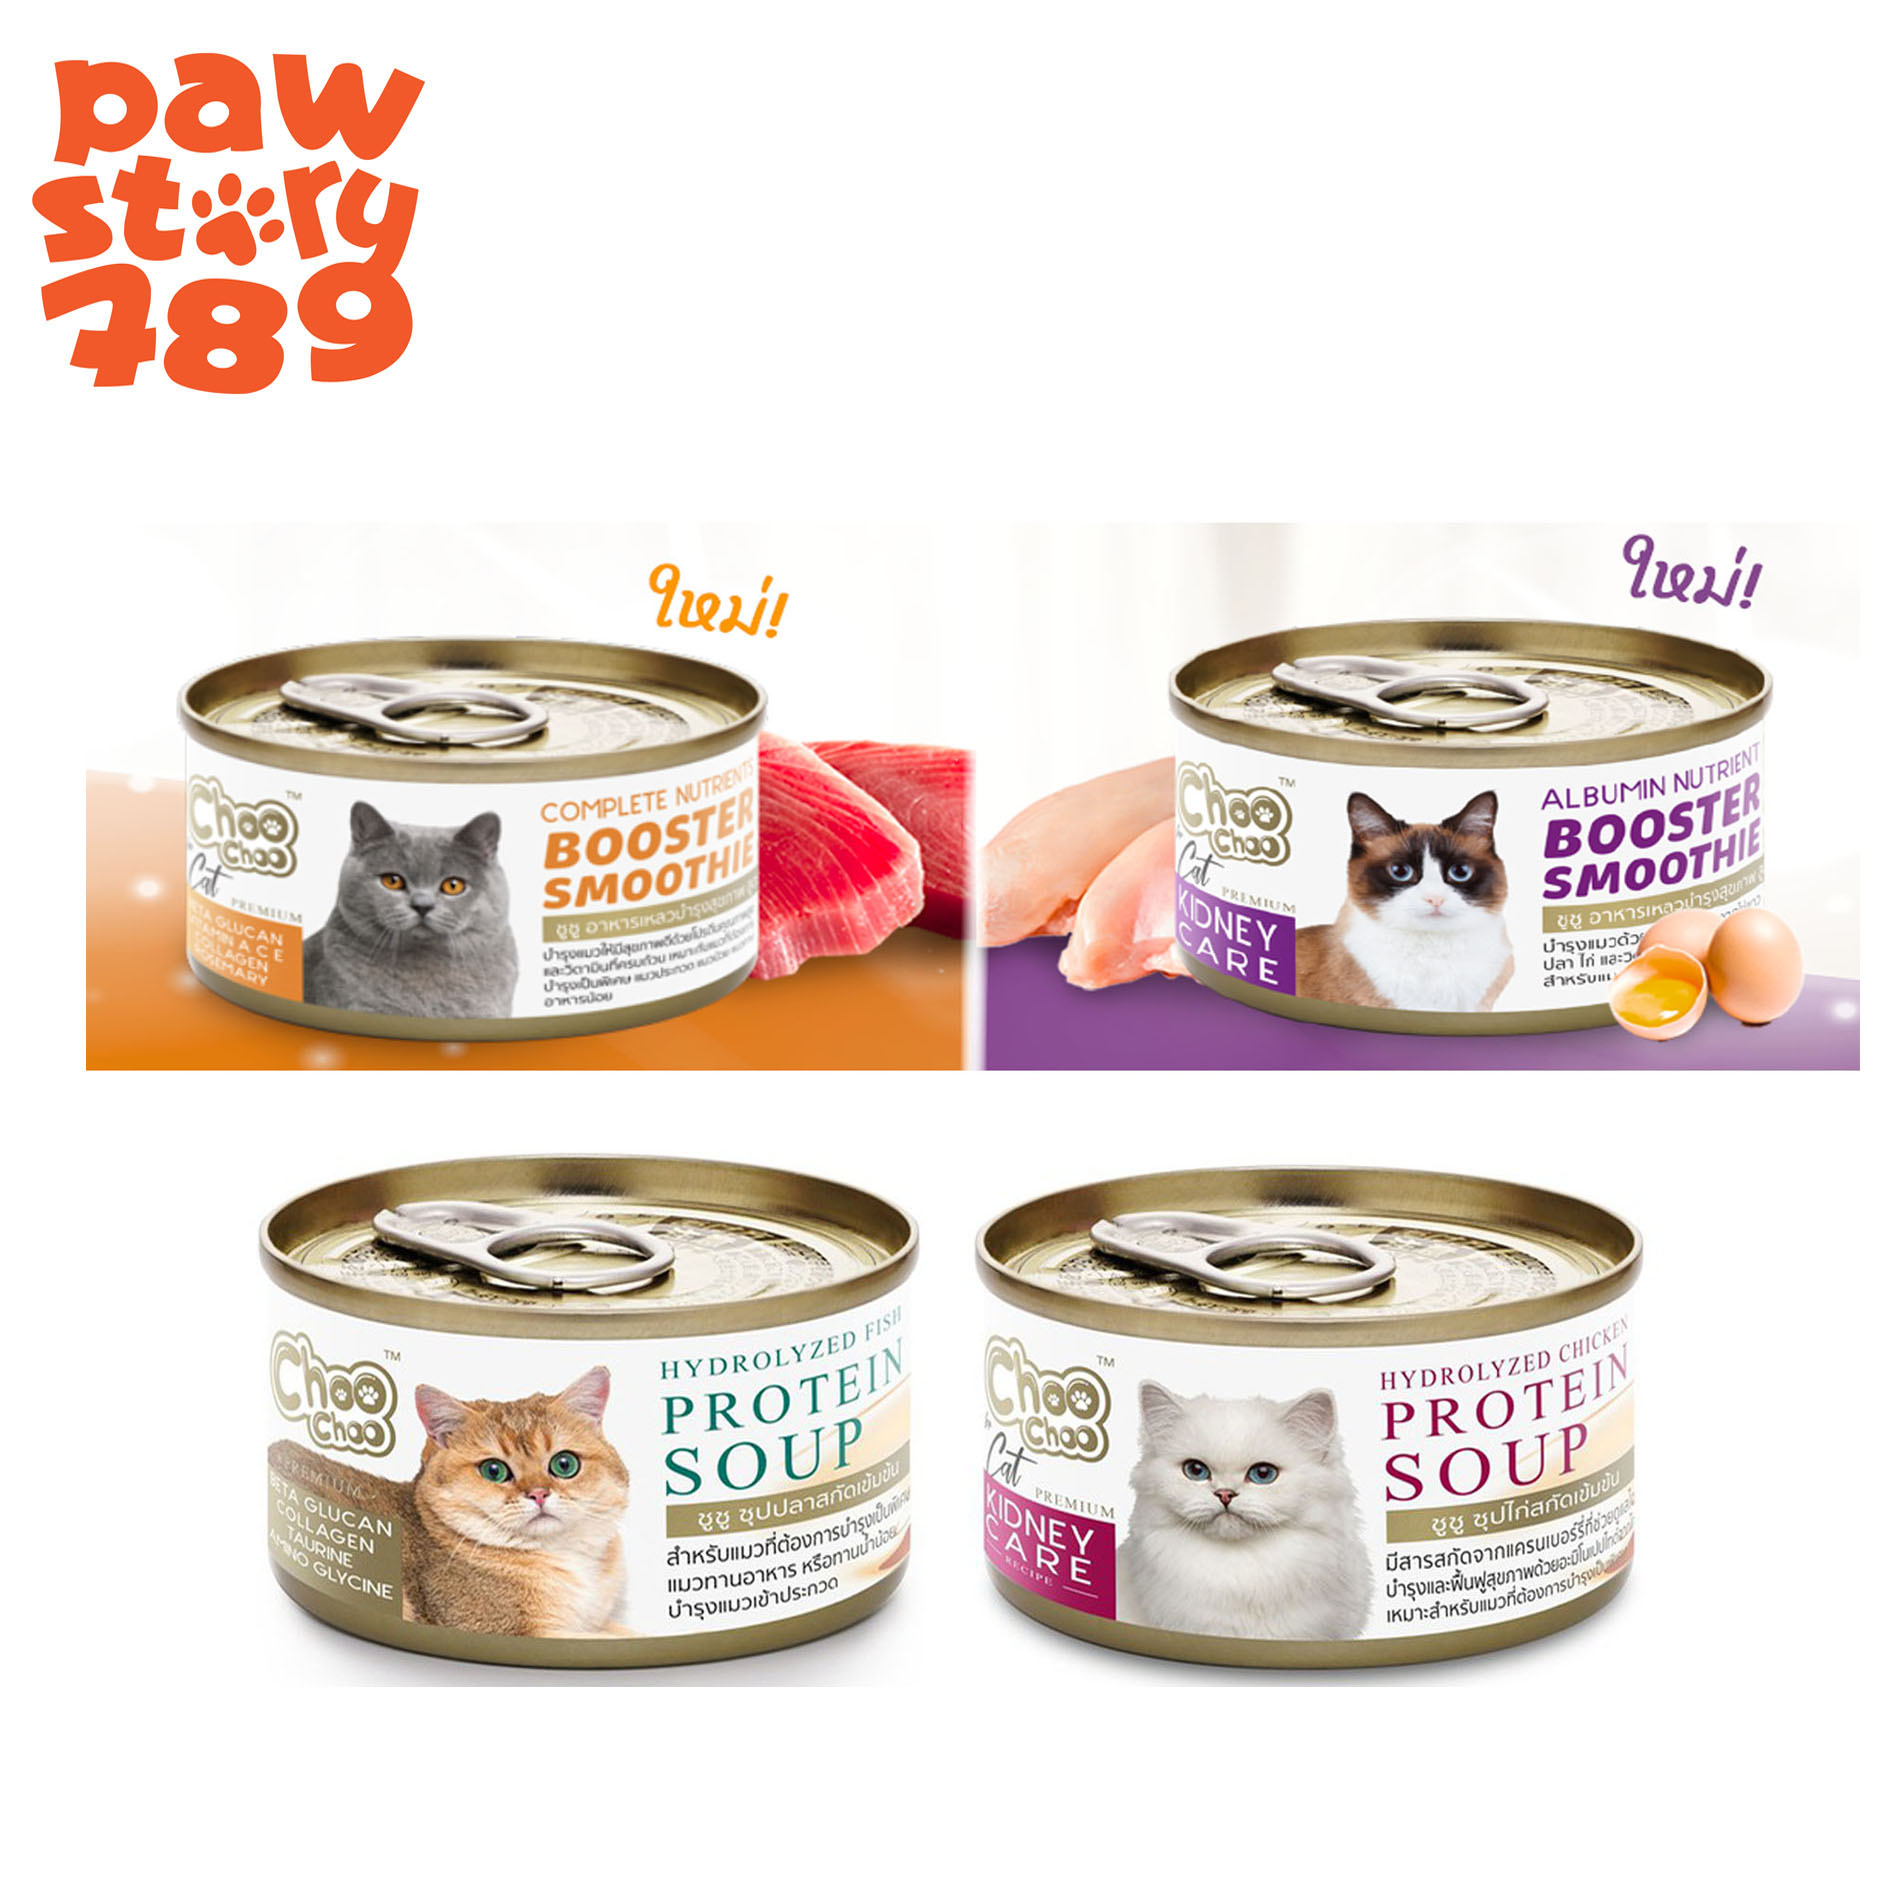 Choo Choo ชูชู อาหารเสริมช่วยบำรุงสุขภาพแมว